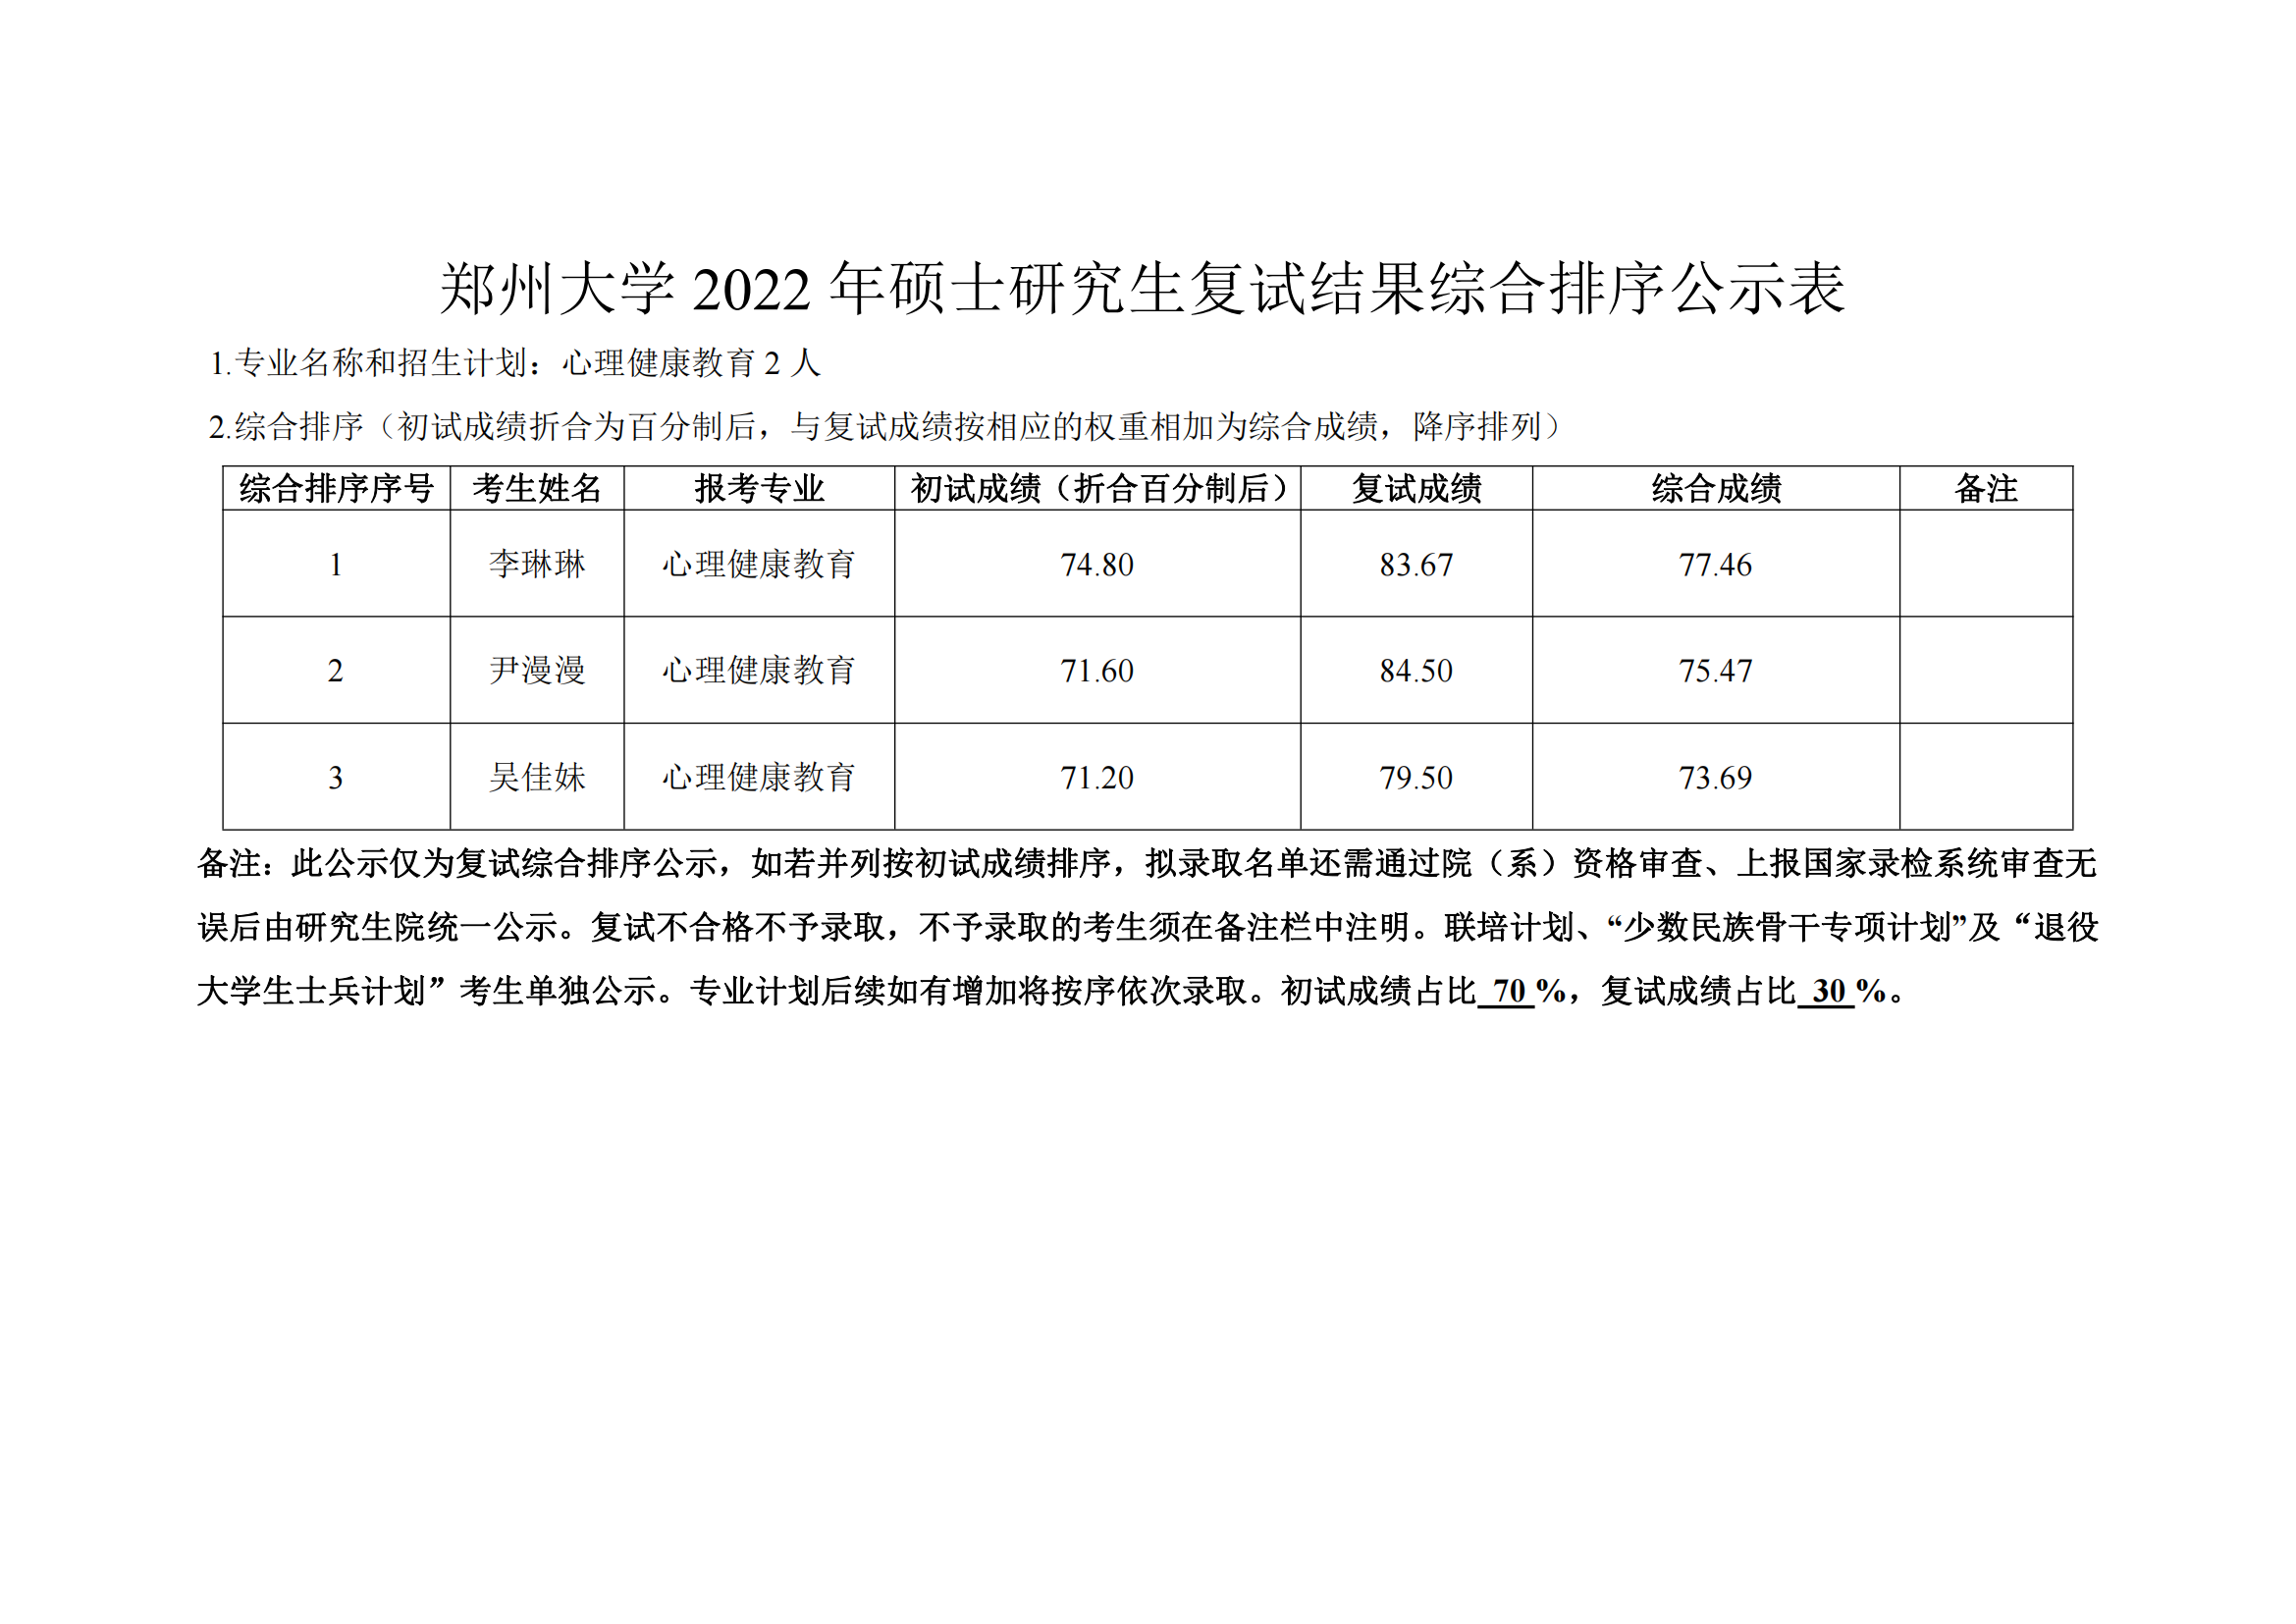 郑州大学教育学院2022年硕士研究生复试结果综合排序公示表_00.png